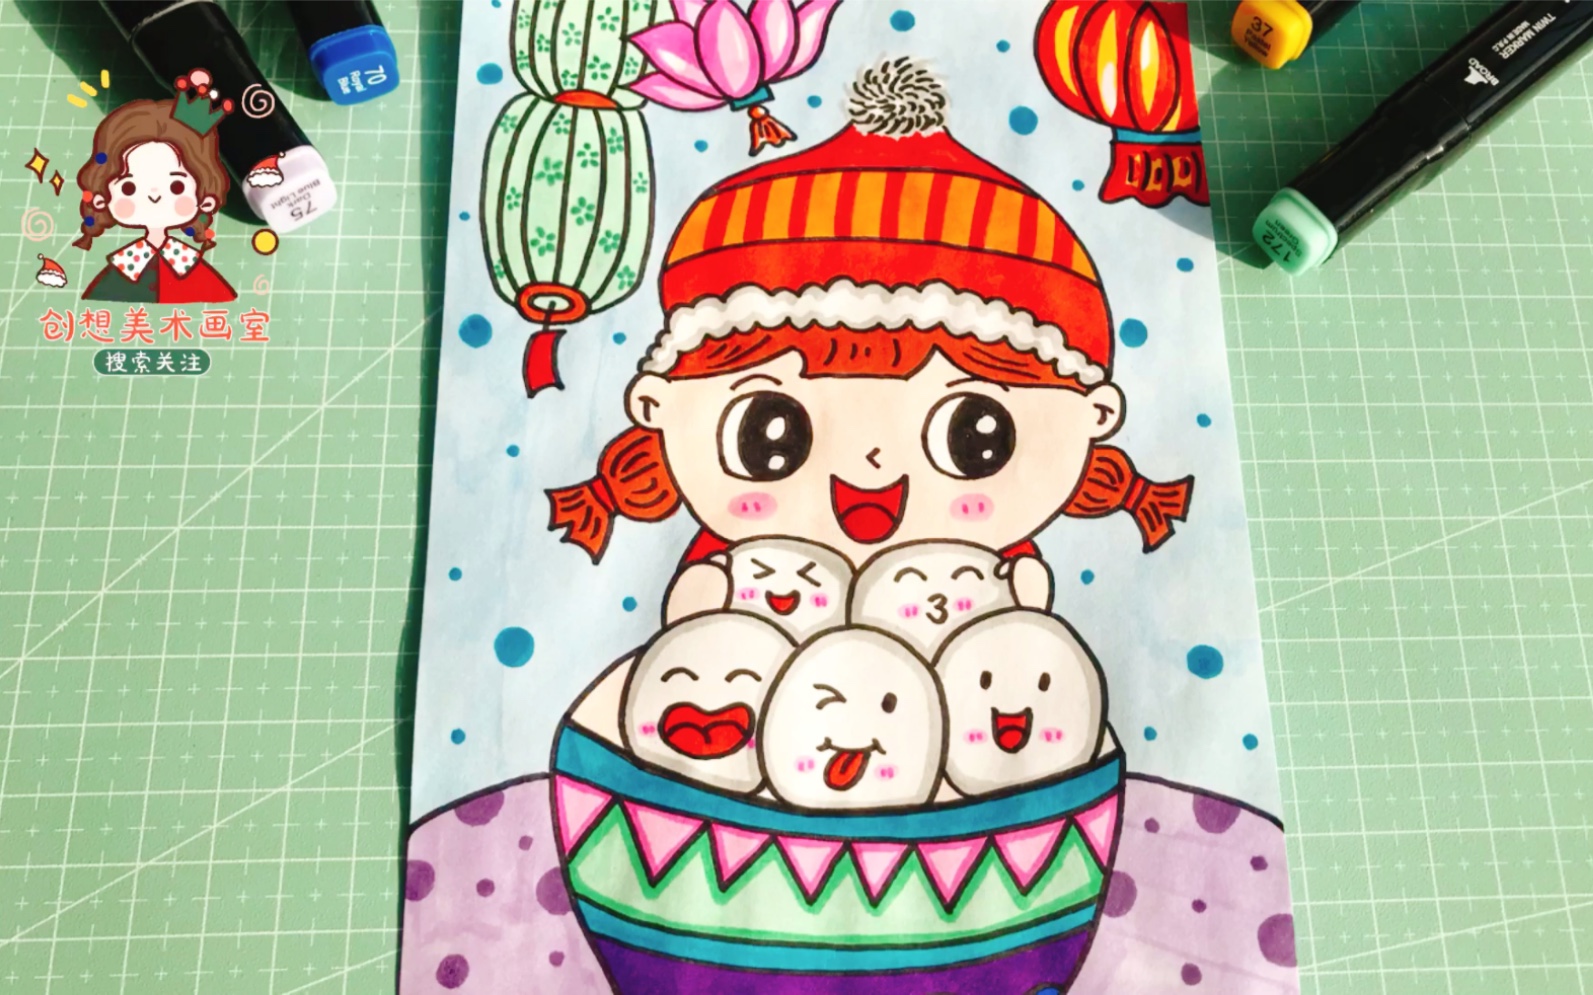 元宵节吃汤圆儿童画,中国传统节日正月十五闹元宵主题画!